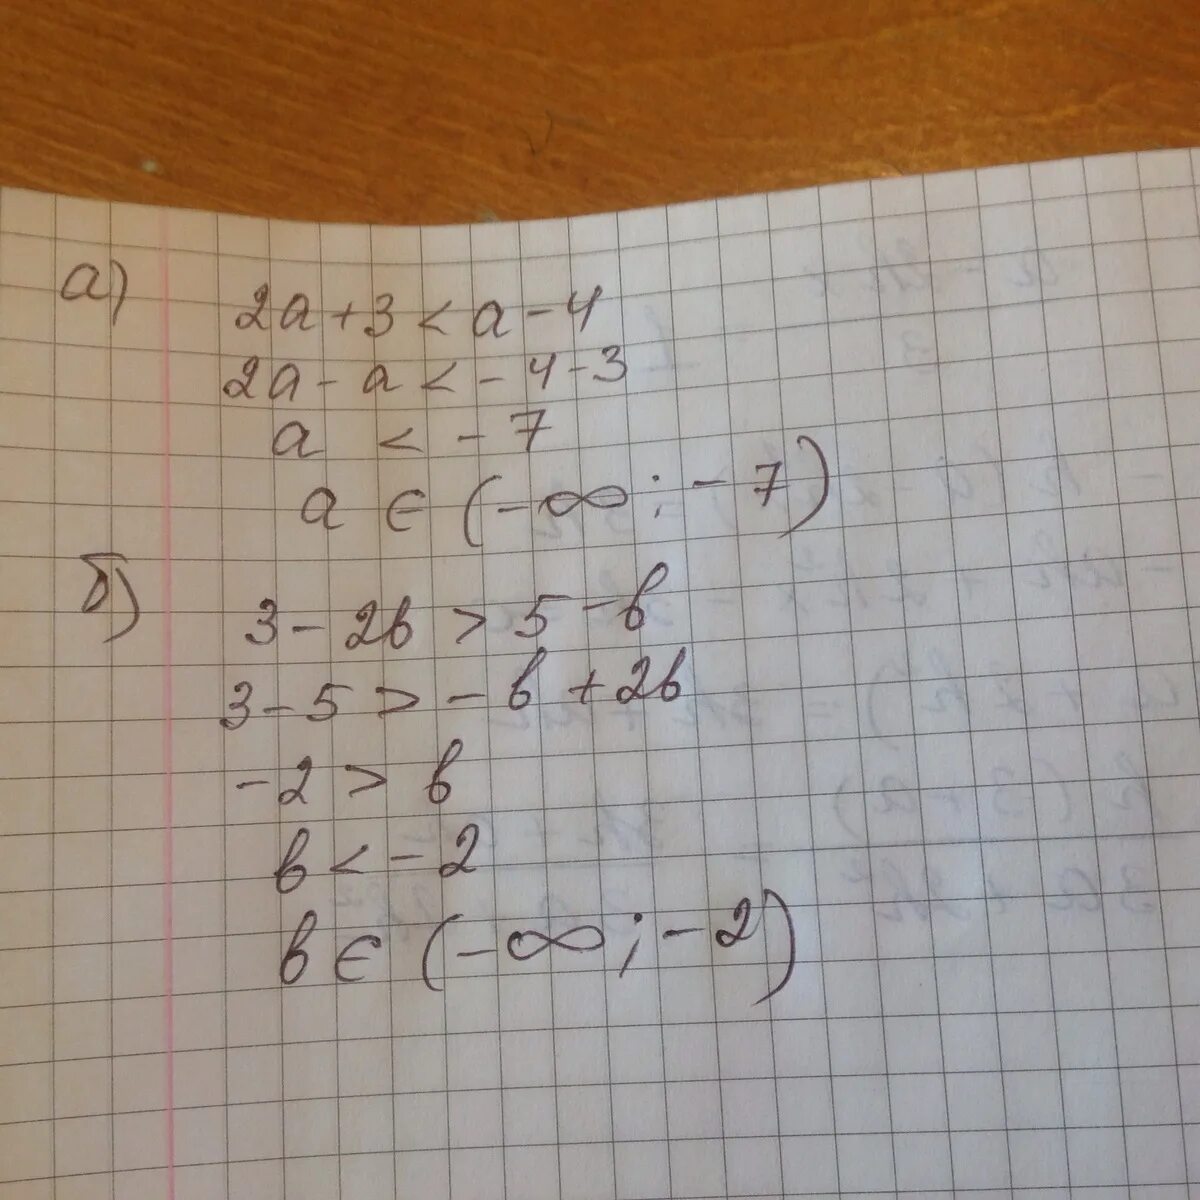 (2а-б)(2а+б)+б2. А^2 - 4а б +4б^2 \а^2-4б^2. (3а-2б)²-(2а-б)(3а+б). (2а*б3)3*(0,5а *б2) 2/3а2*б3)4. Равно 4x 3 5